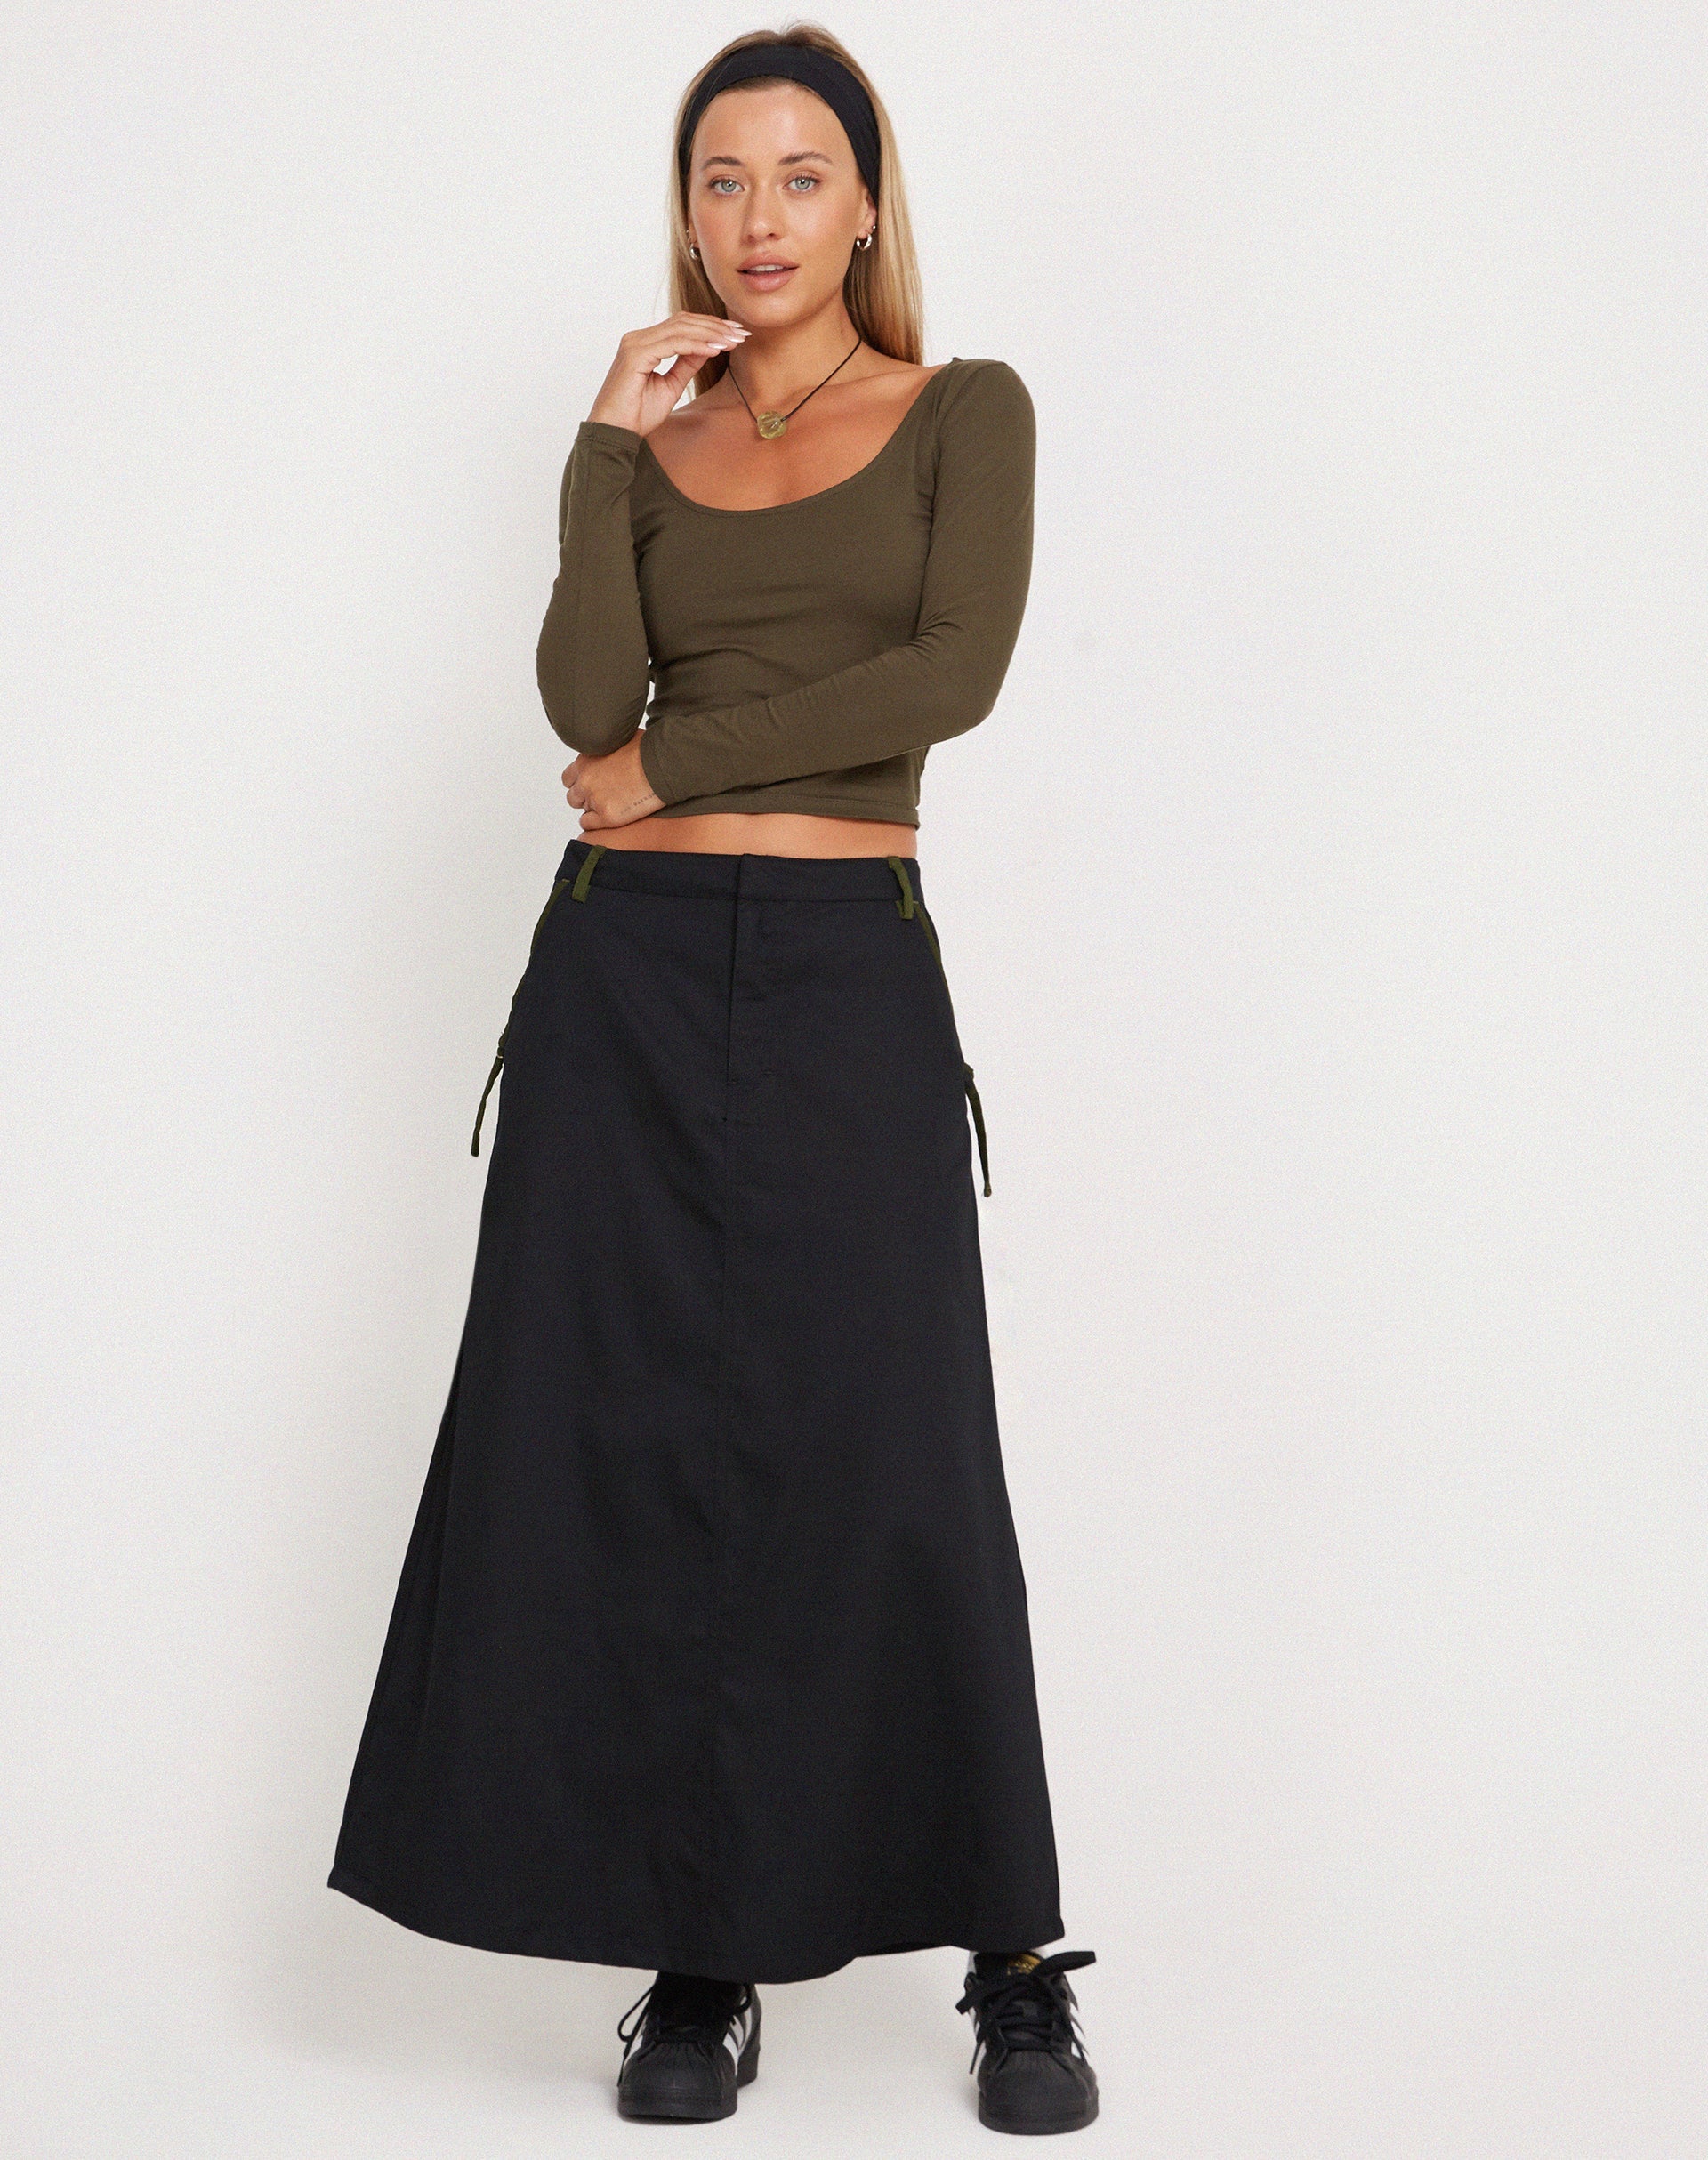 Image of Sorrel Midi Skirt in Black Forest Green